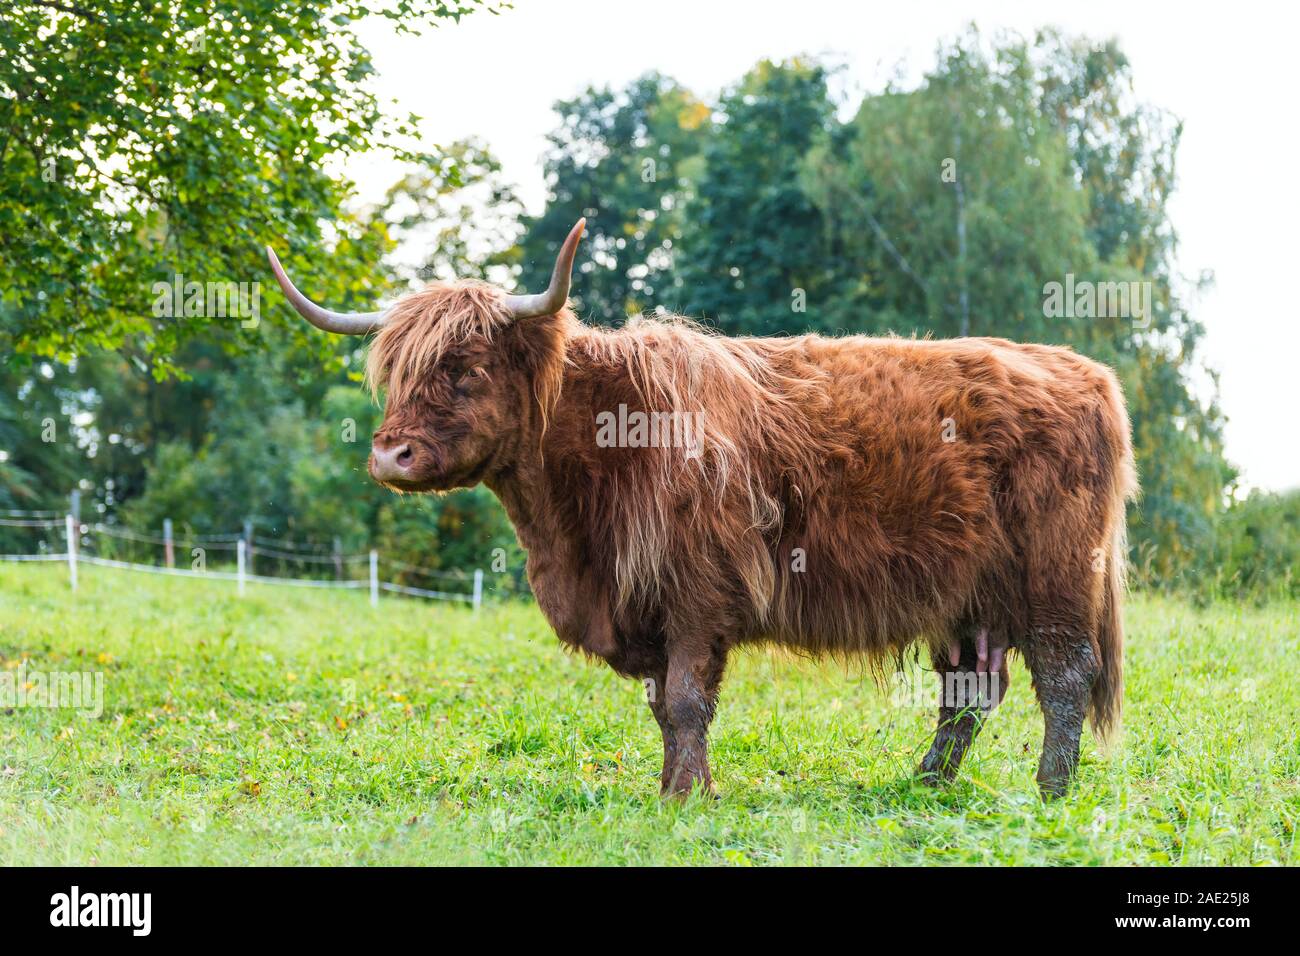 Ingwer Highland Tiere Kuh Profil. Grüne Wiese grasen. Bos taurus Detail. Ein Rind mit Hörnern, Braun wolliges Fell und Euter. Ländliche Weide. Stockfoto